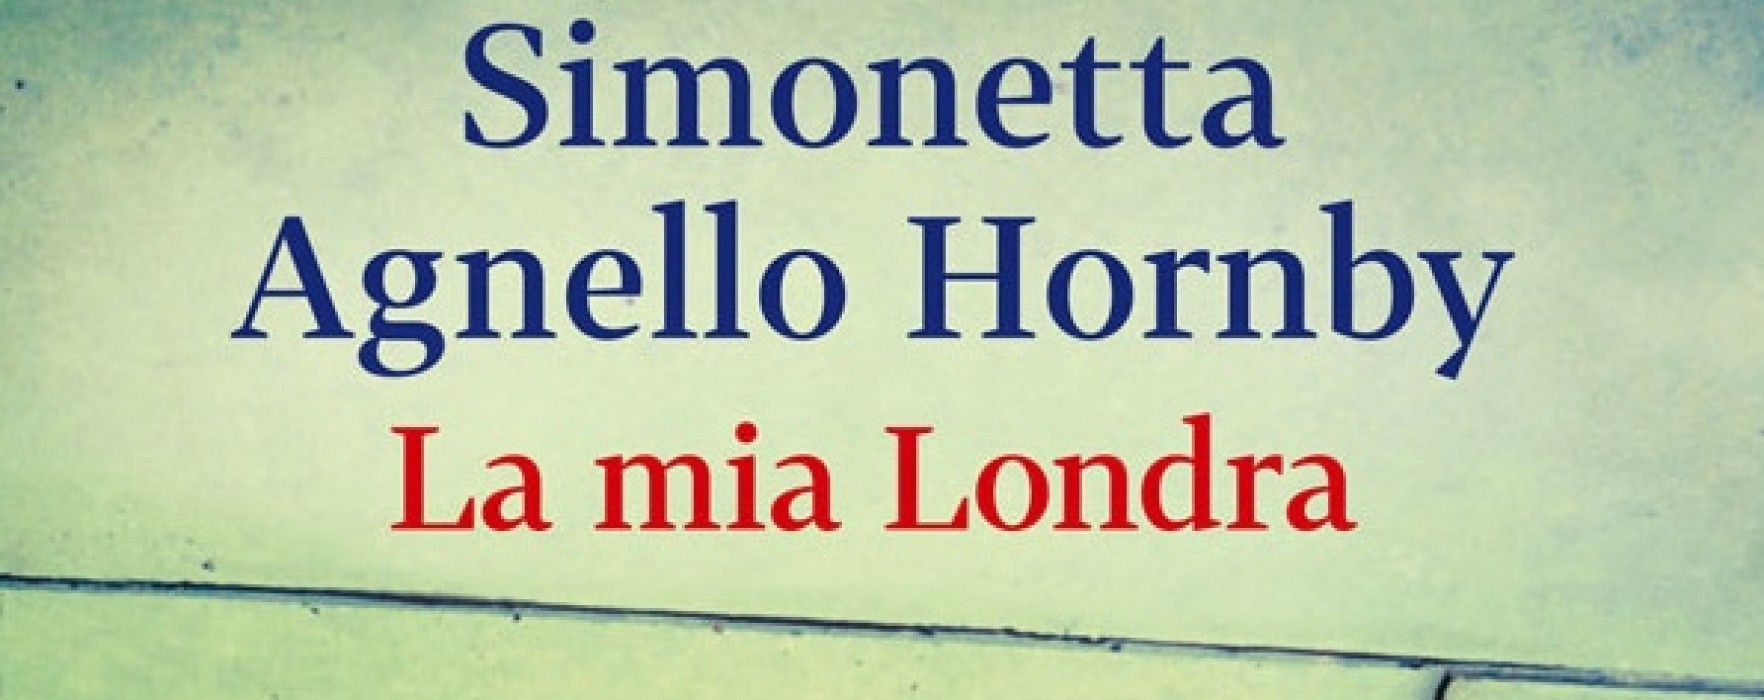 La mia Londra. Simonetta Agnello Hornby